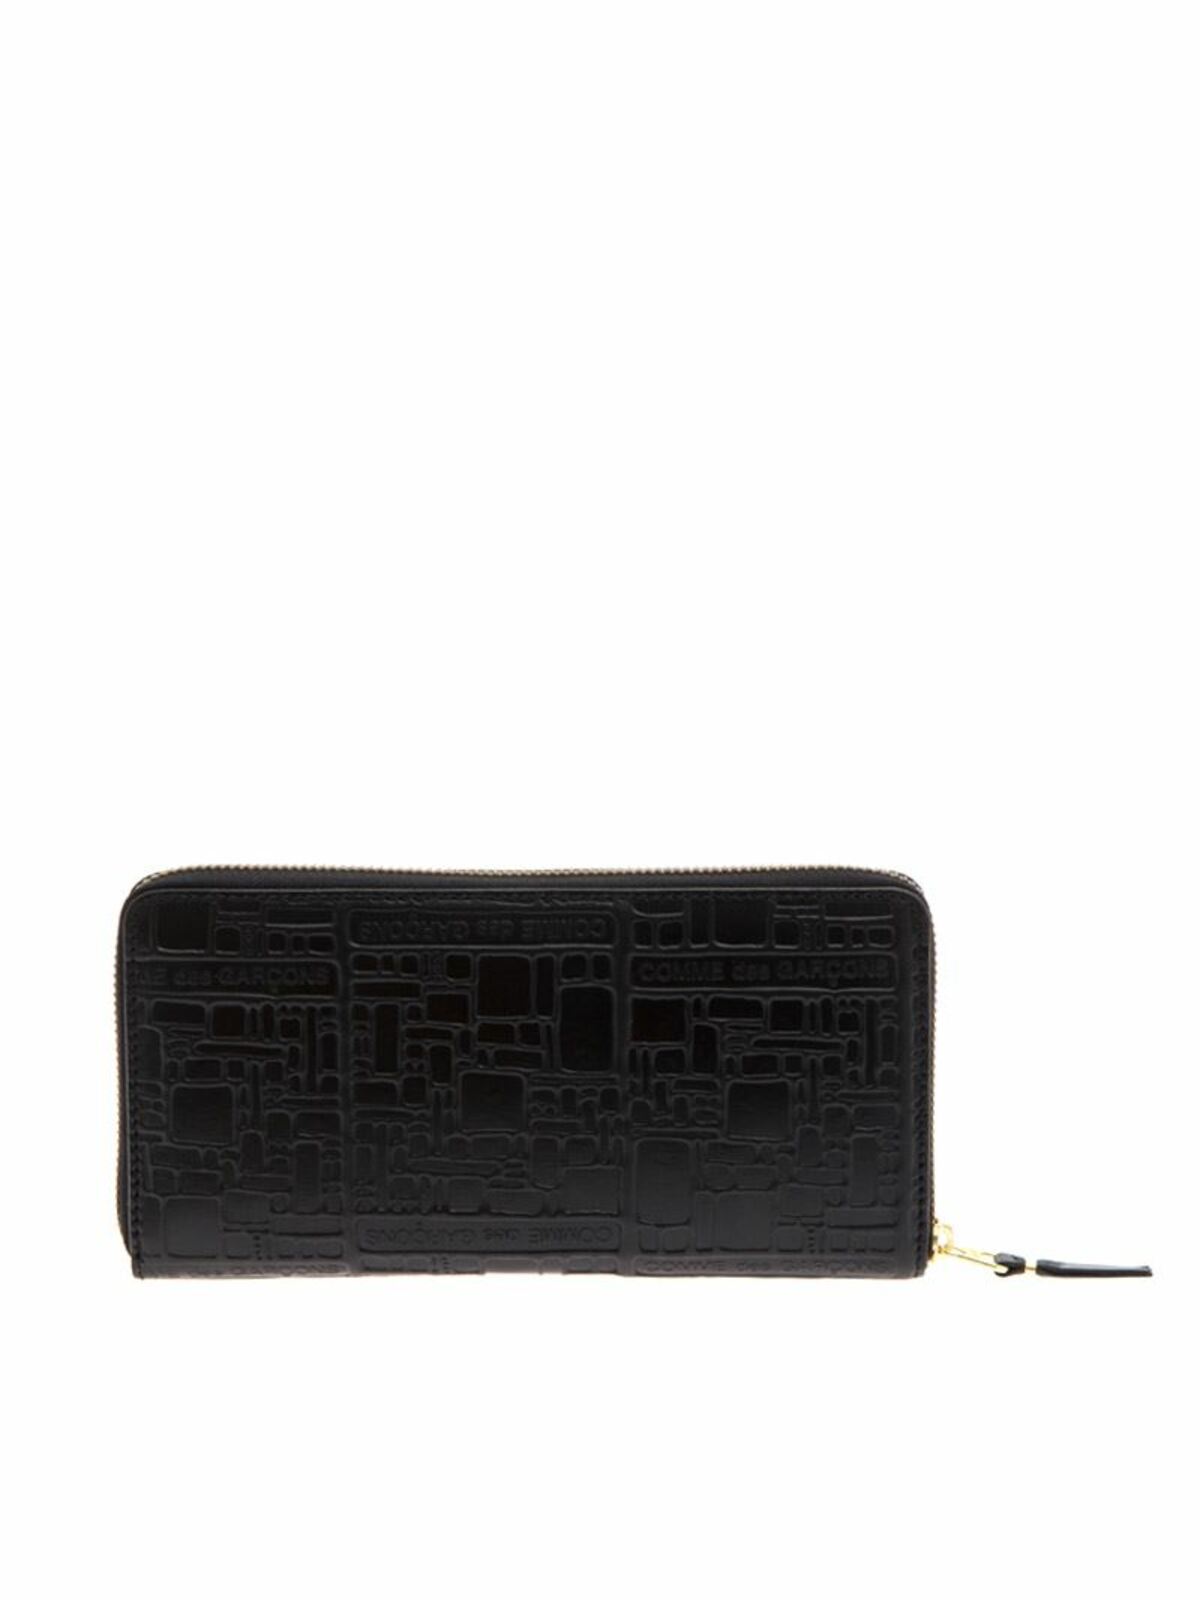 Cartera / Bolso / Monedero color Negro - Louis Vuitton